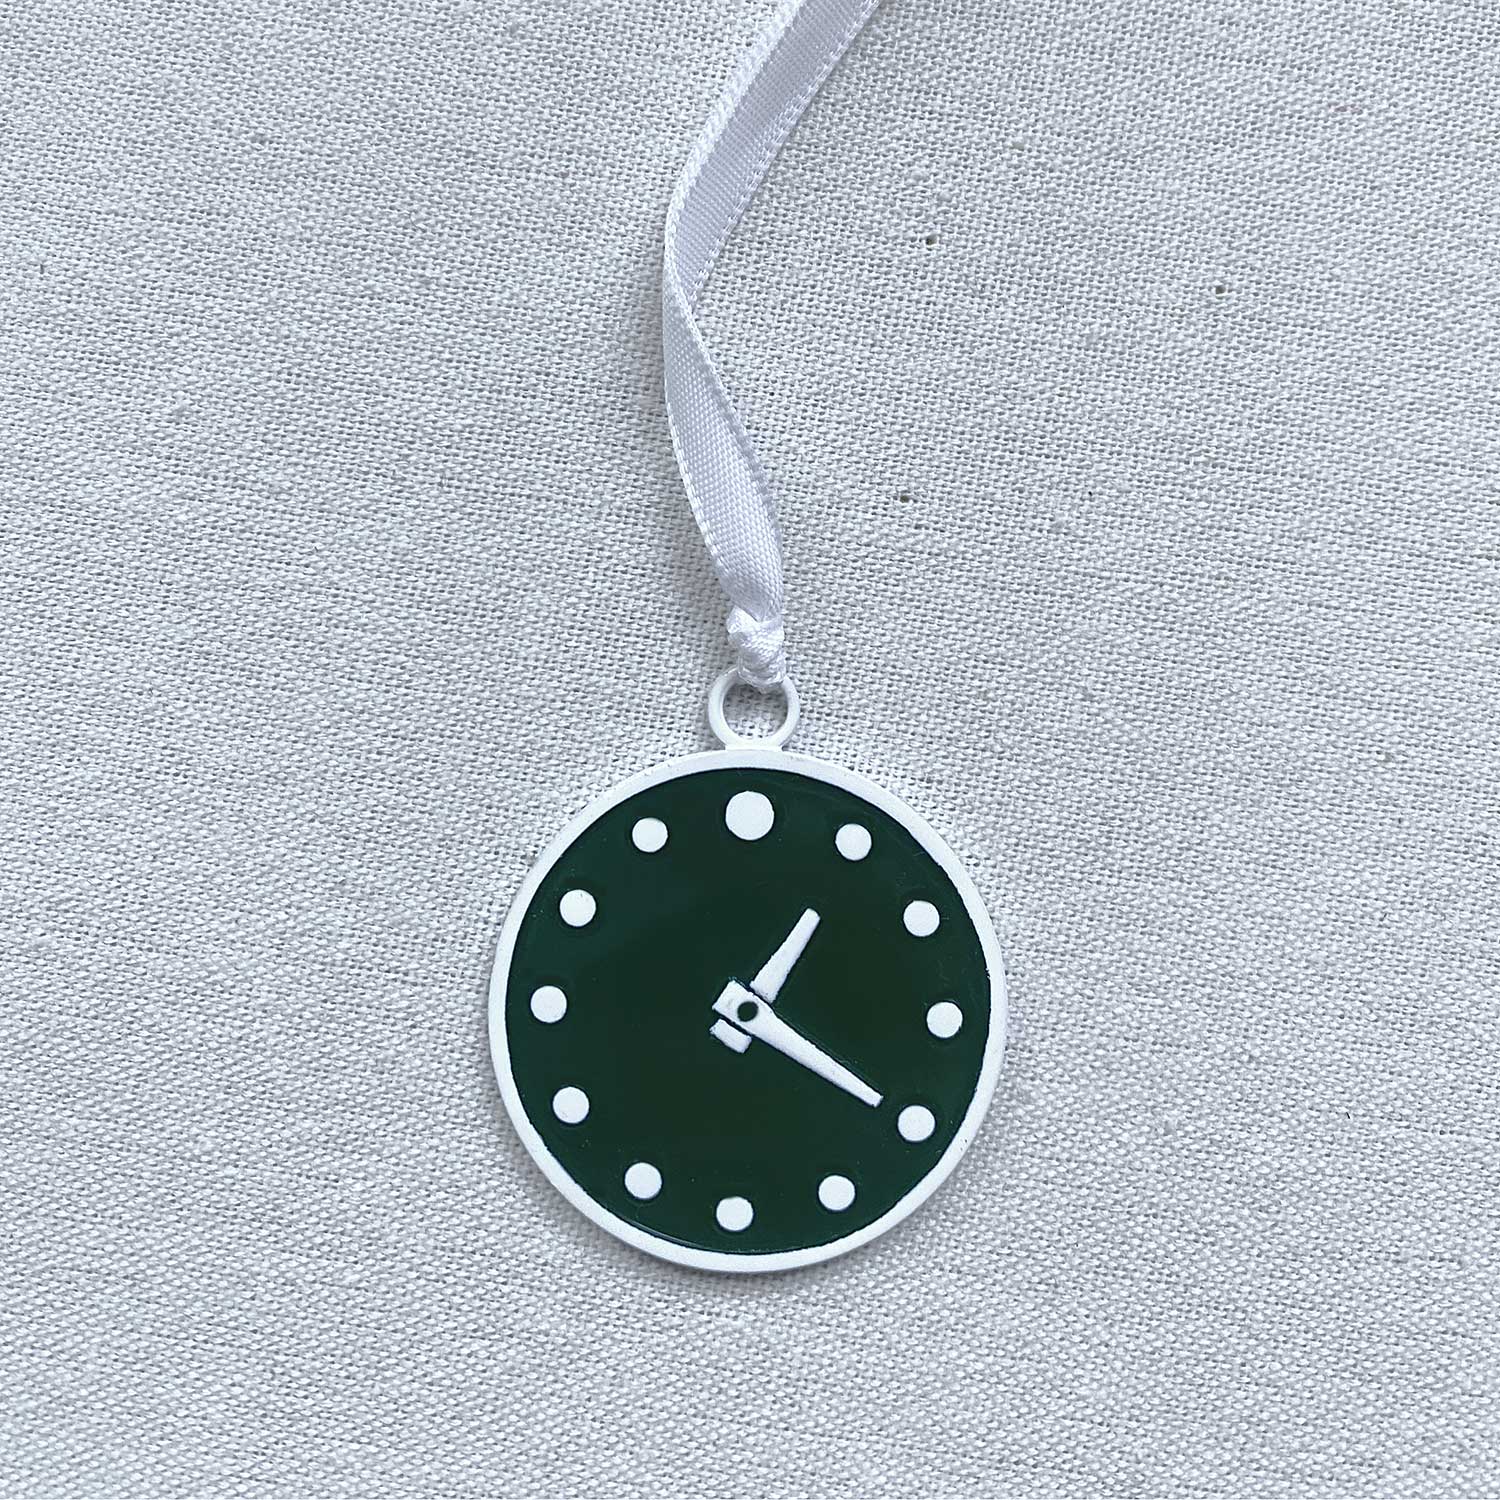 Wrigley Field Clock Ornament